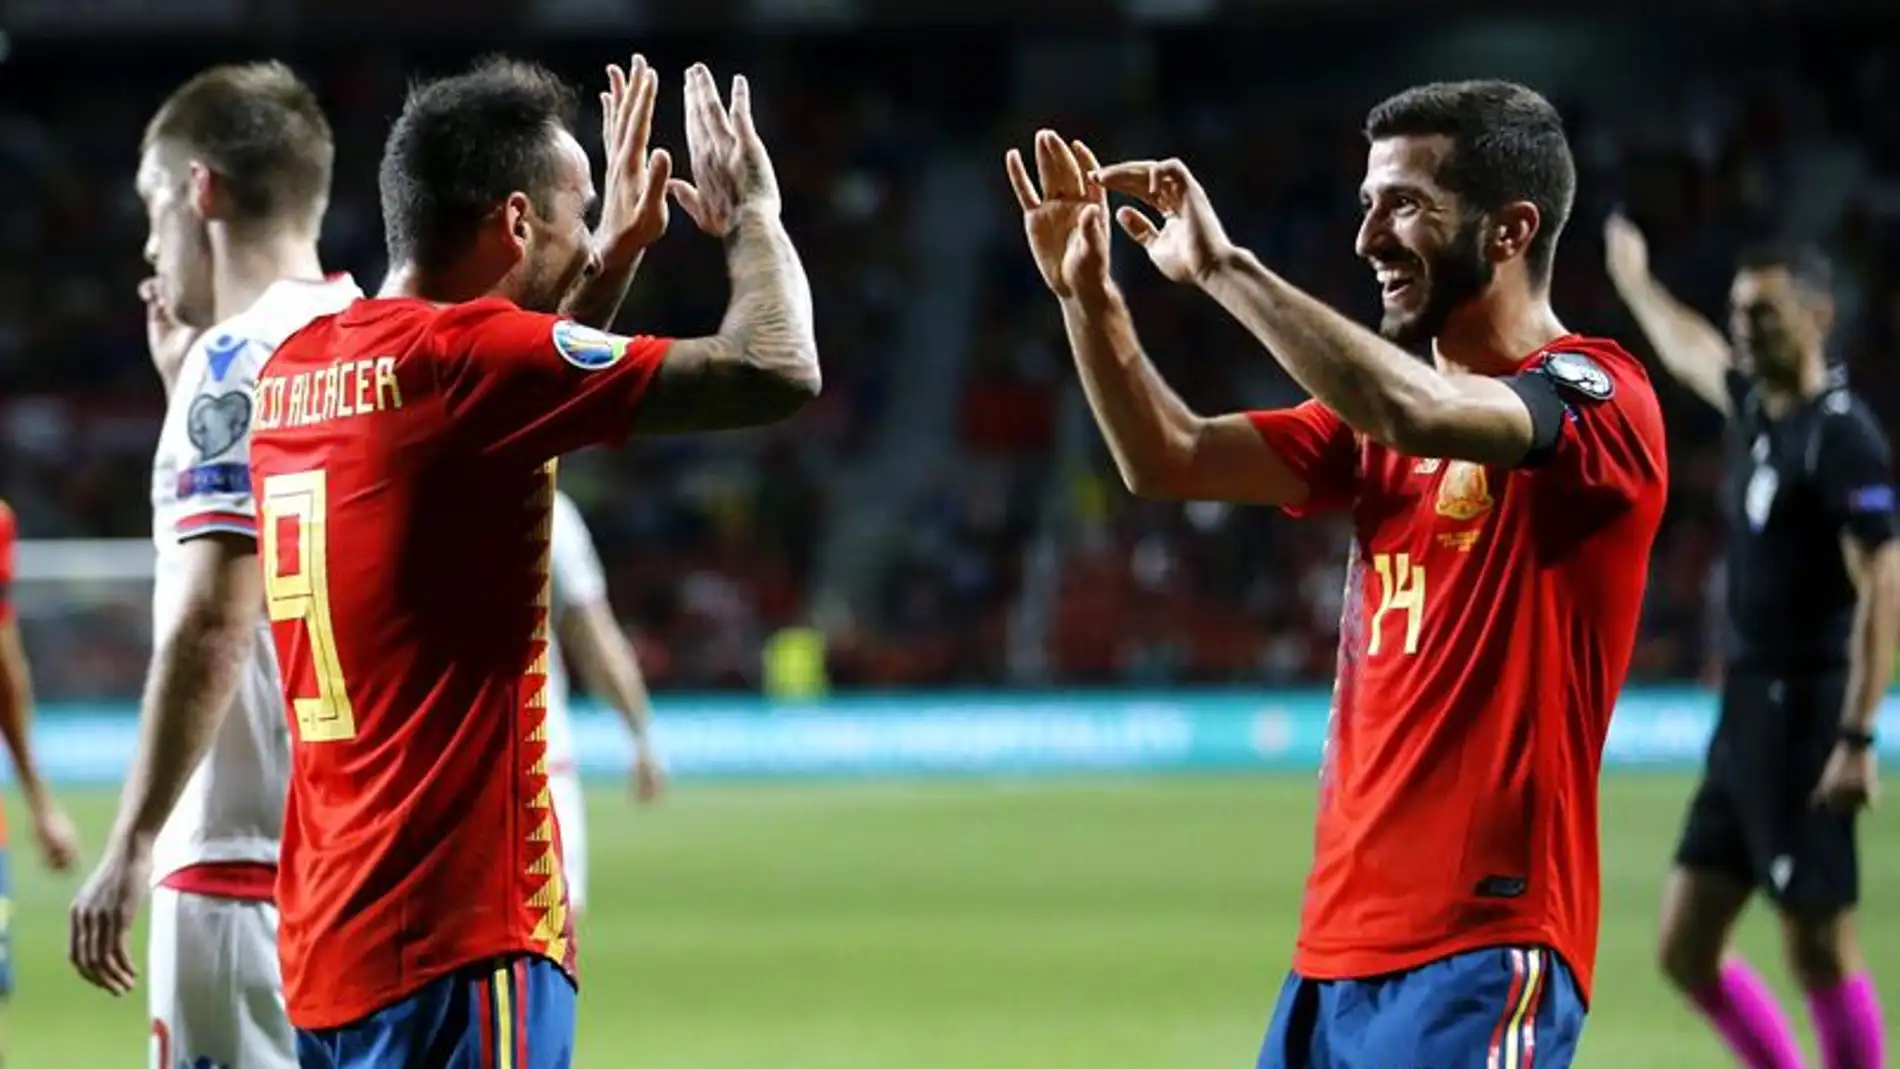  Los jugadores de la selección española Paco Alcacer y José Luis Gayá celebran el cuarto gol del combinado español durante el encuentro clasificatorio para la Eurocopa 2020